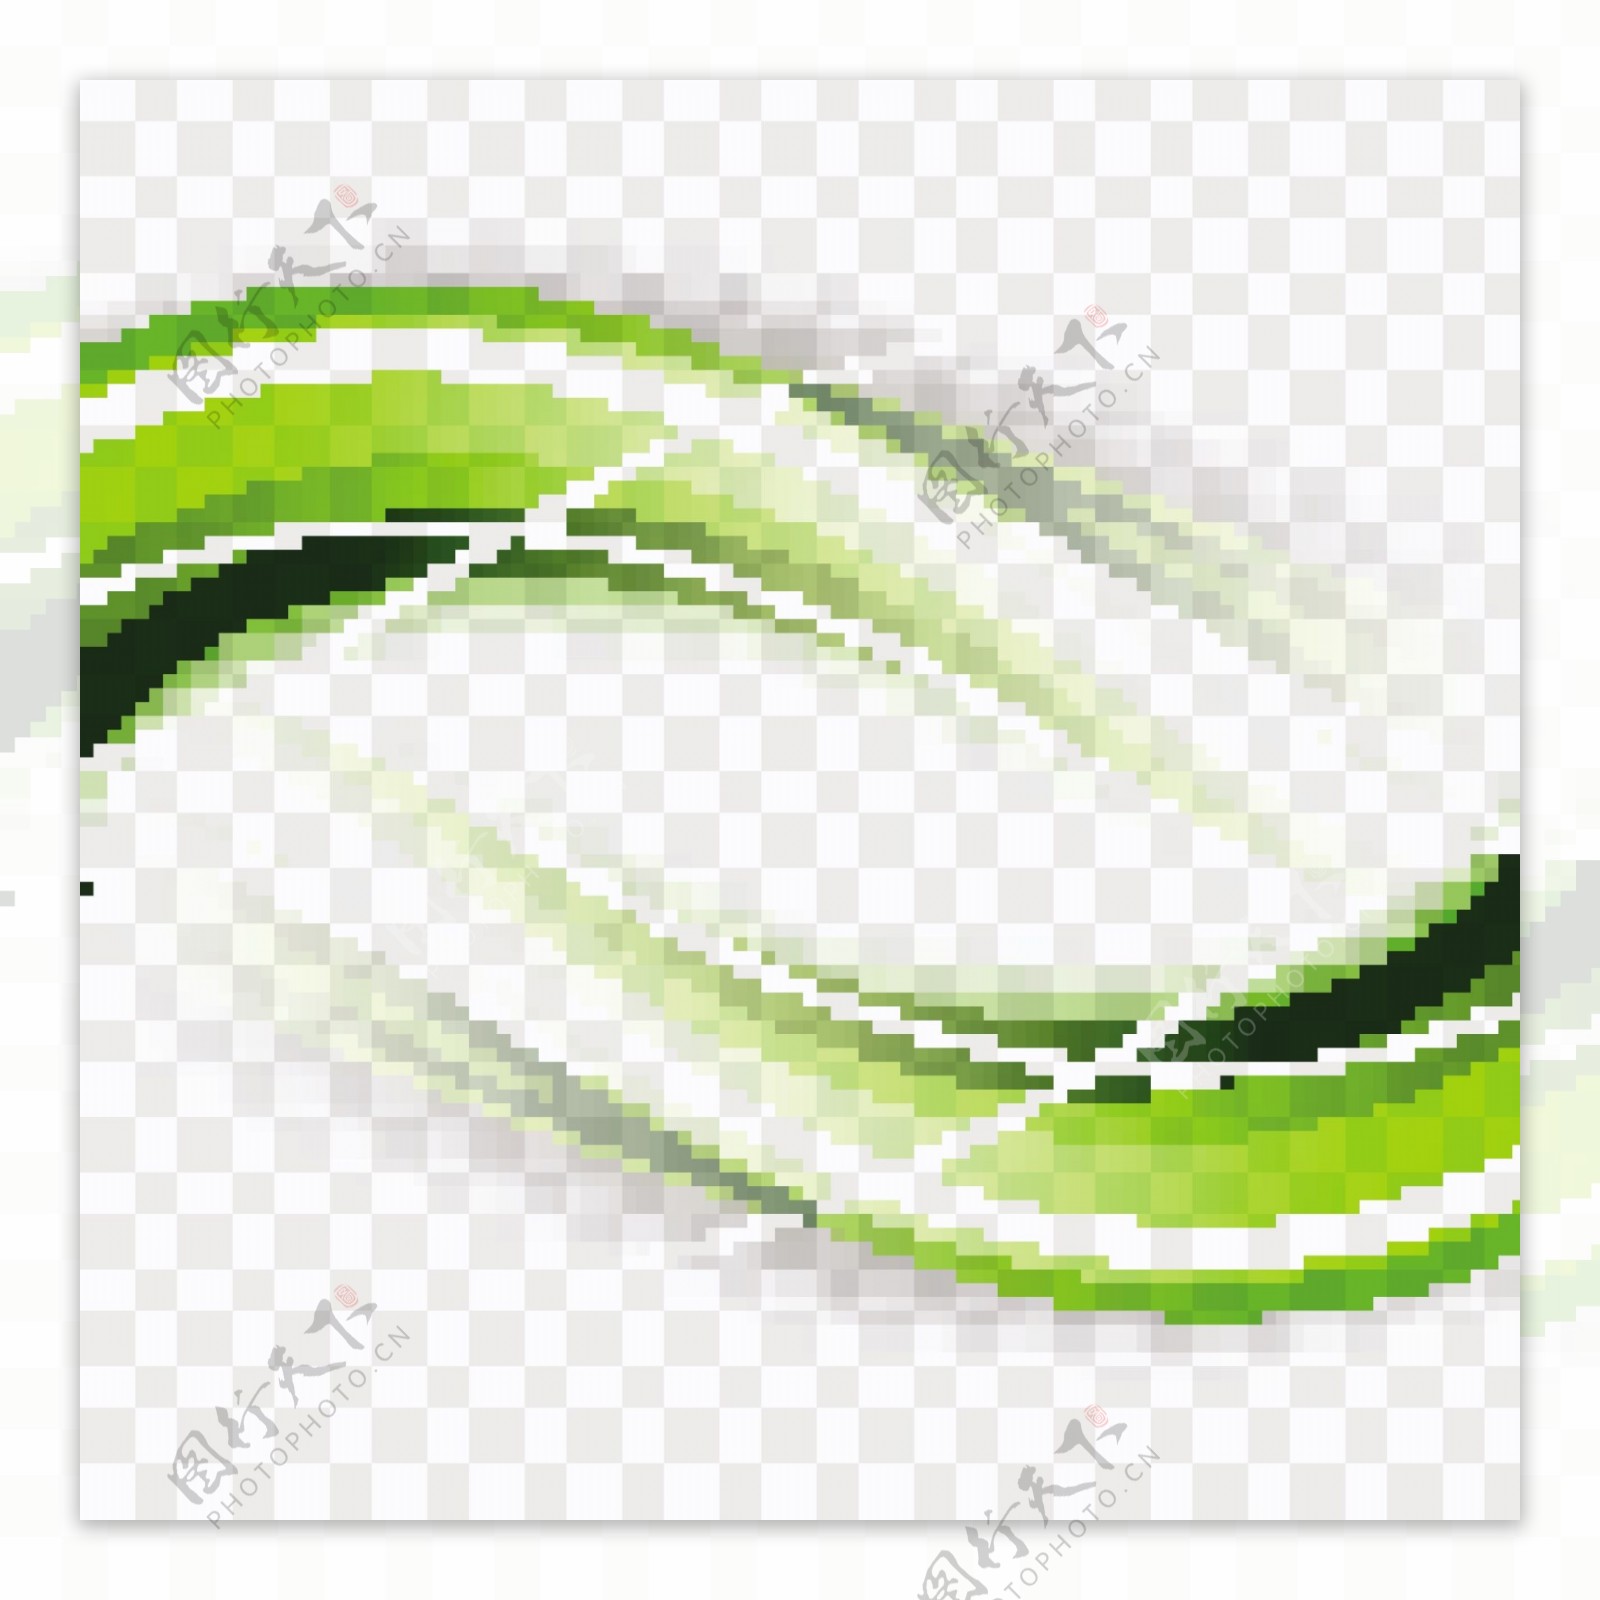 绿色波浪形状素材